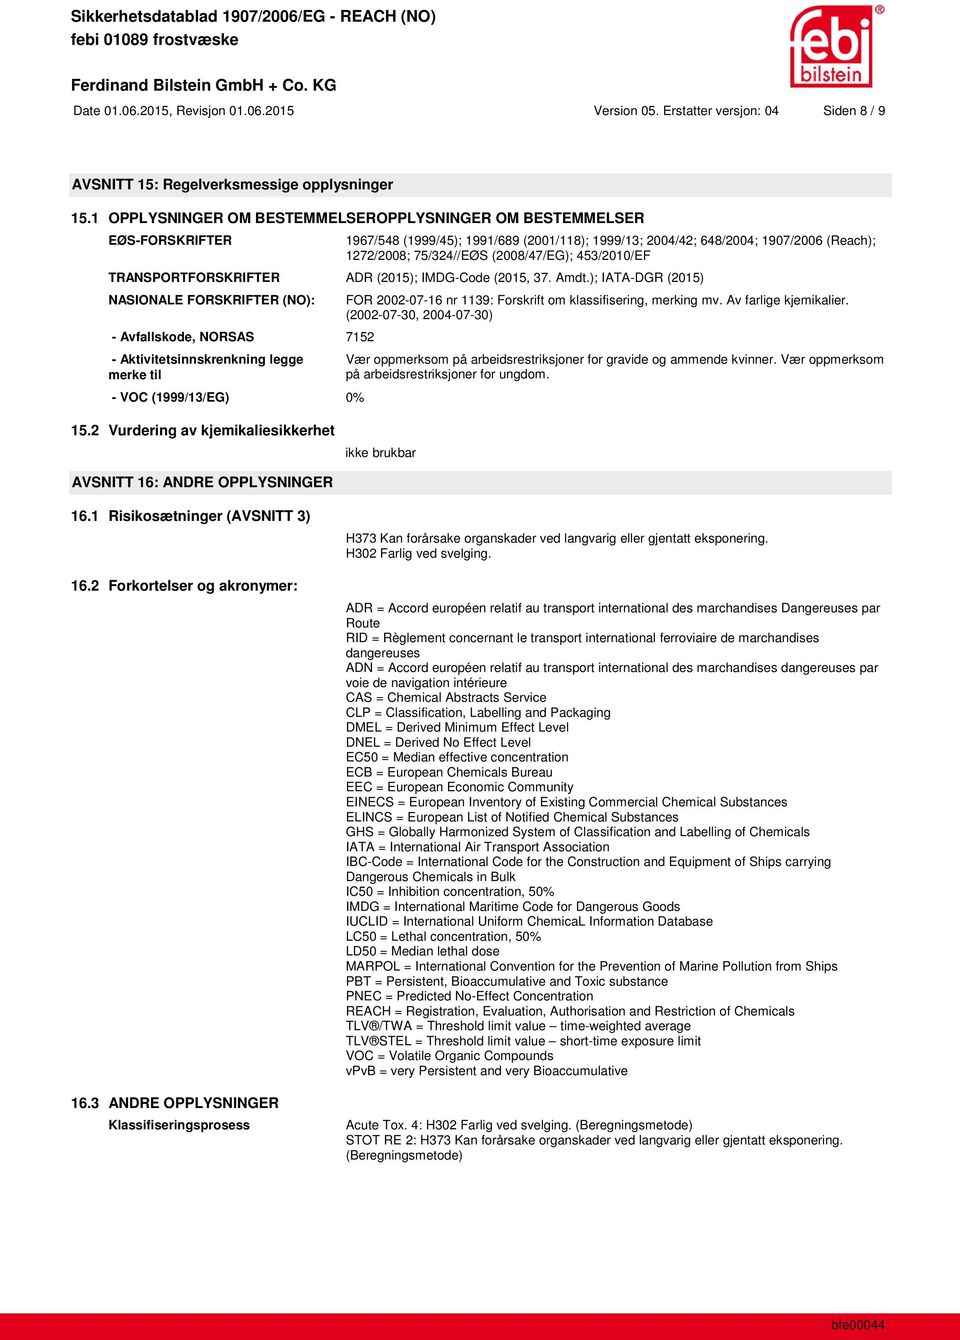 453/2010/EF TRANSPORTFORSKRIFTER ADR (2015); IMDG-Code (2015, 37. Amdt.